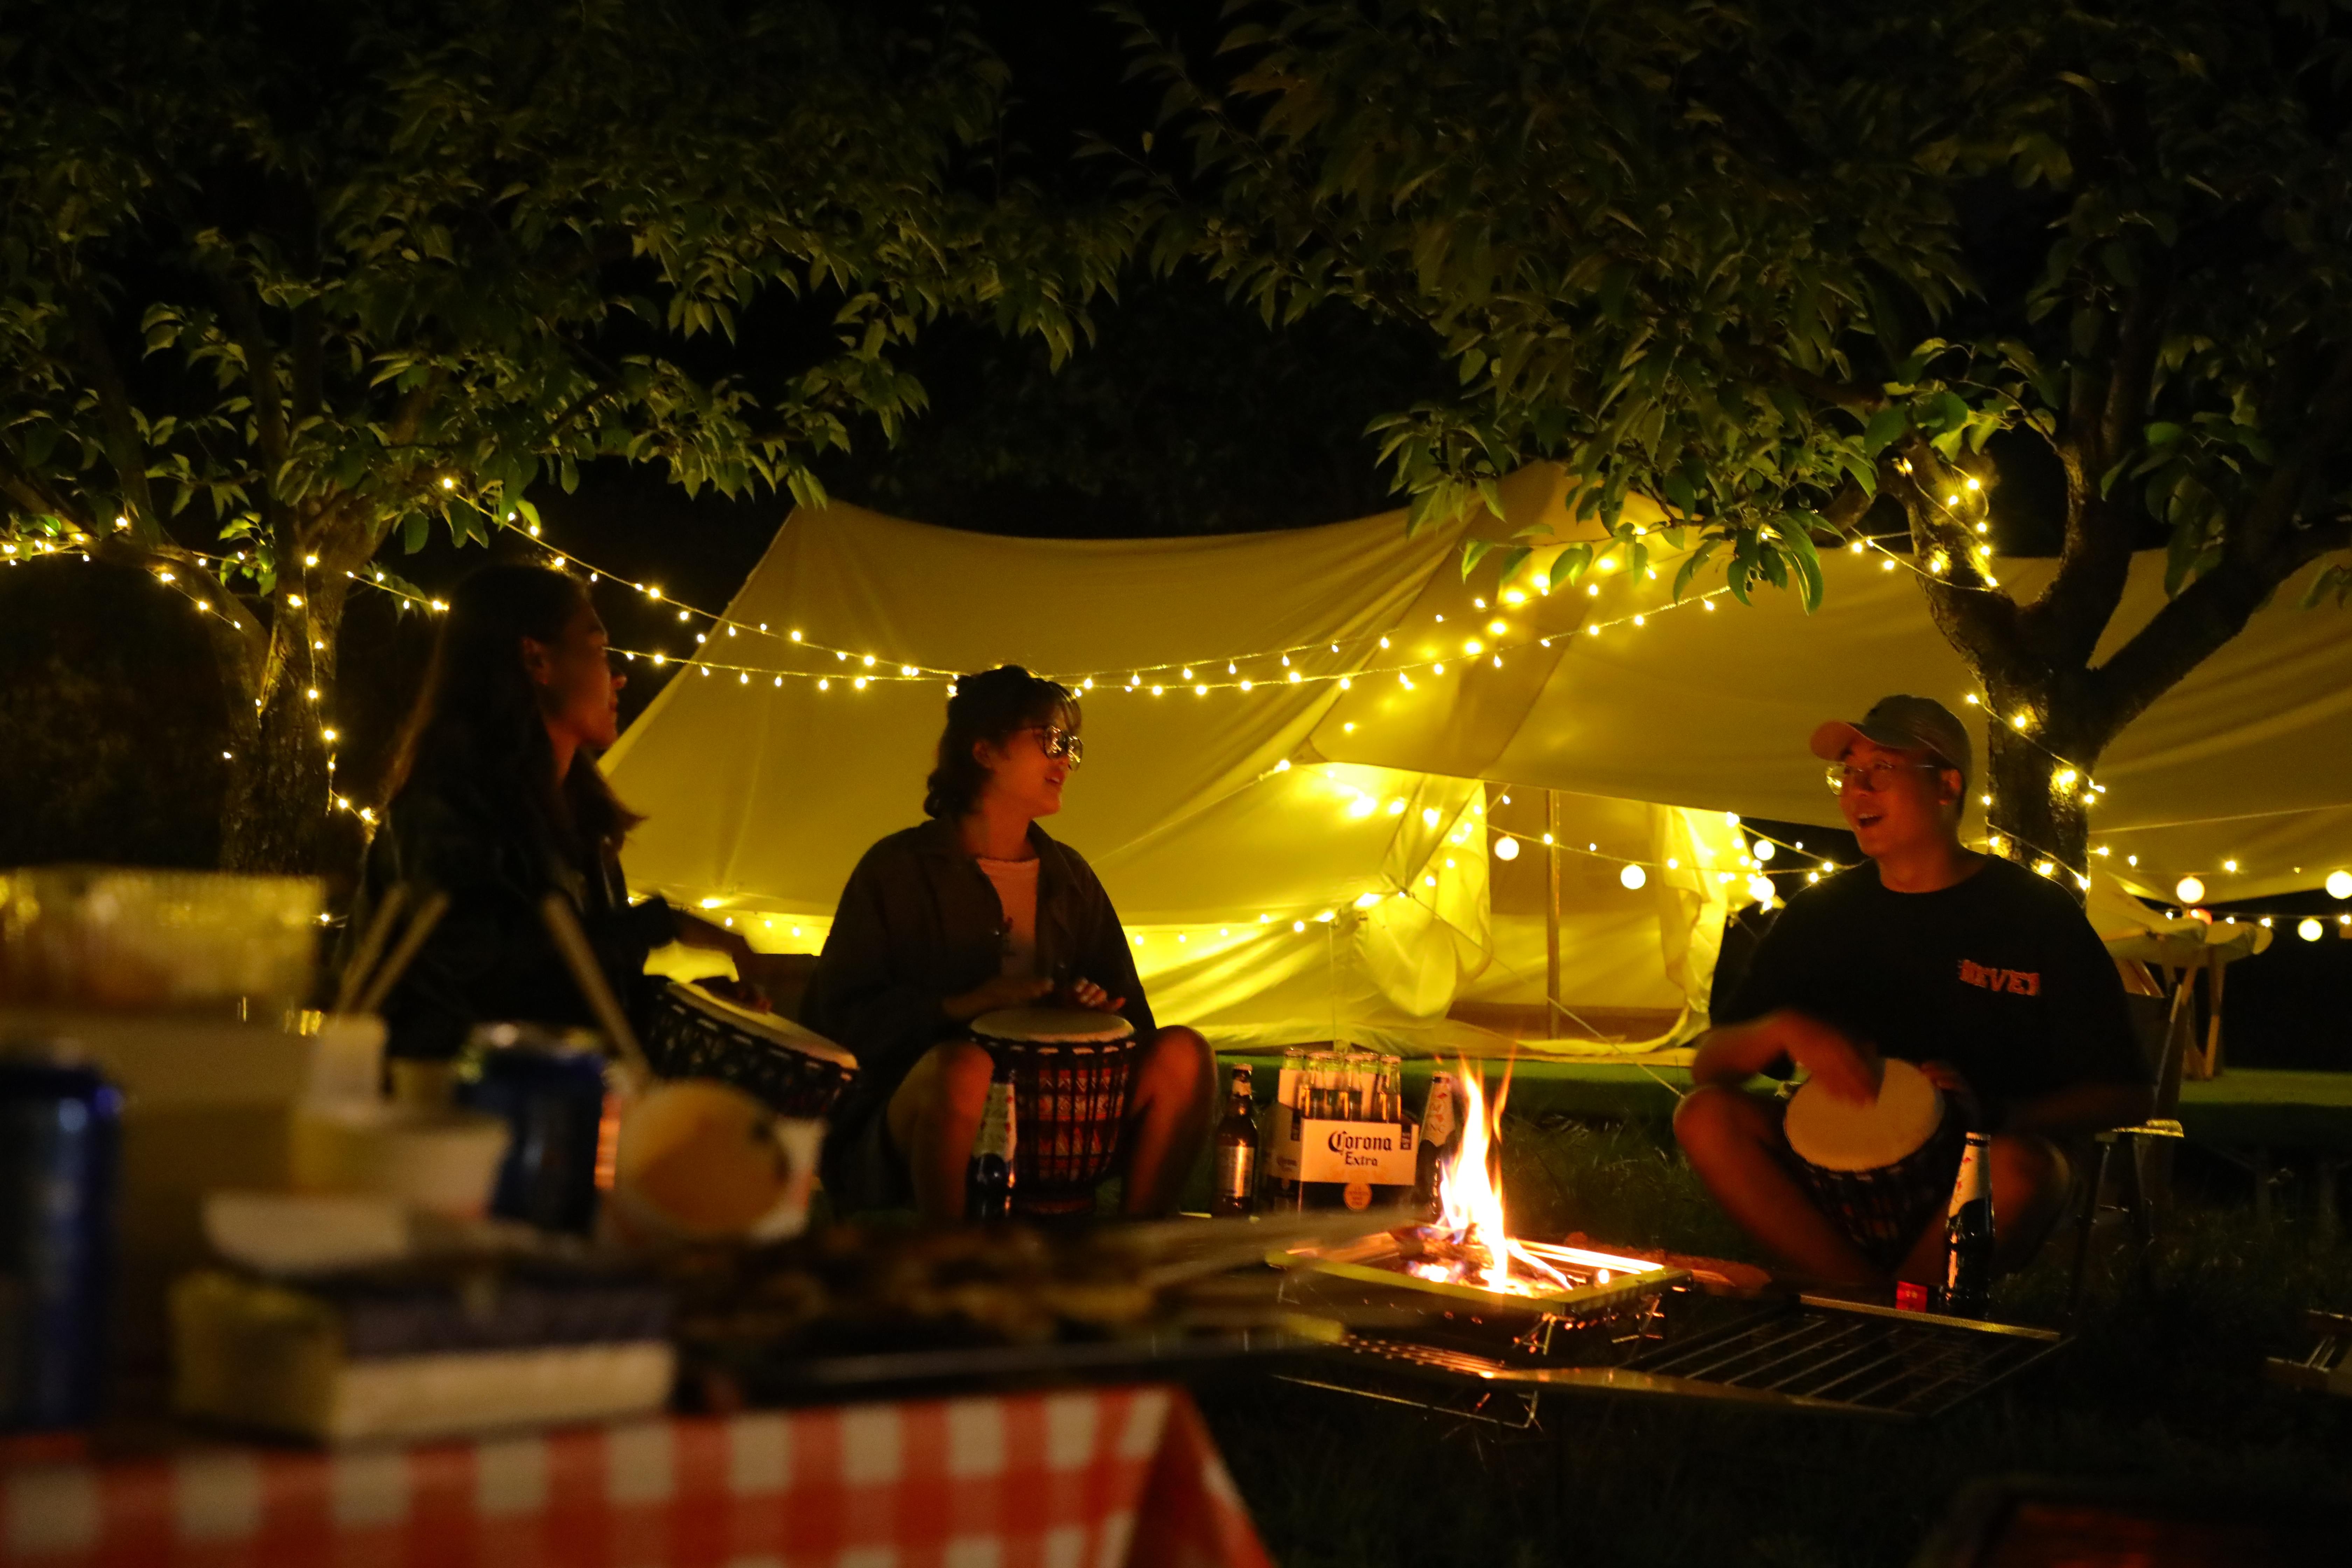 定位于家庭露营，「嗨king野奢营地」想要打造“微度假”连锁营地新品牌 | 早期项目